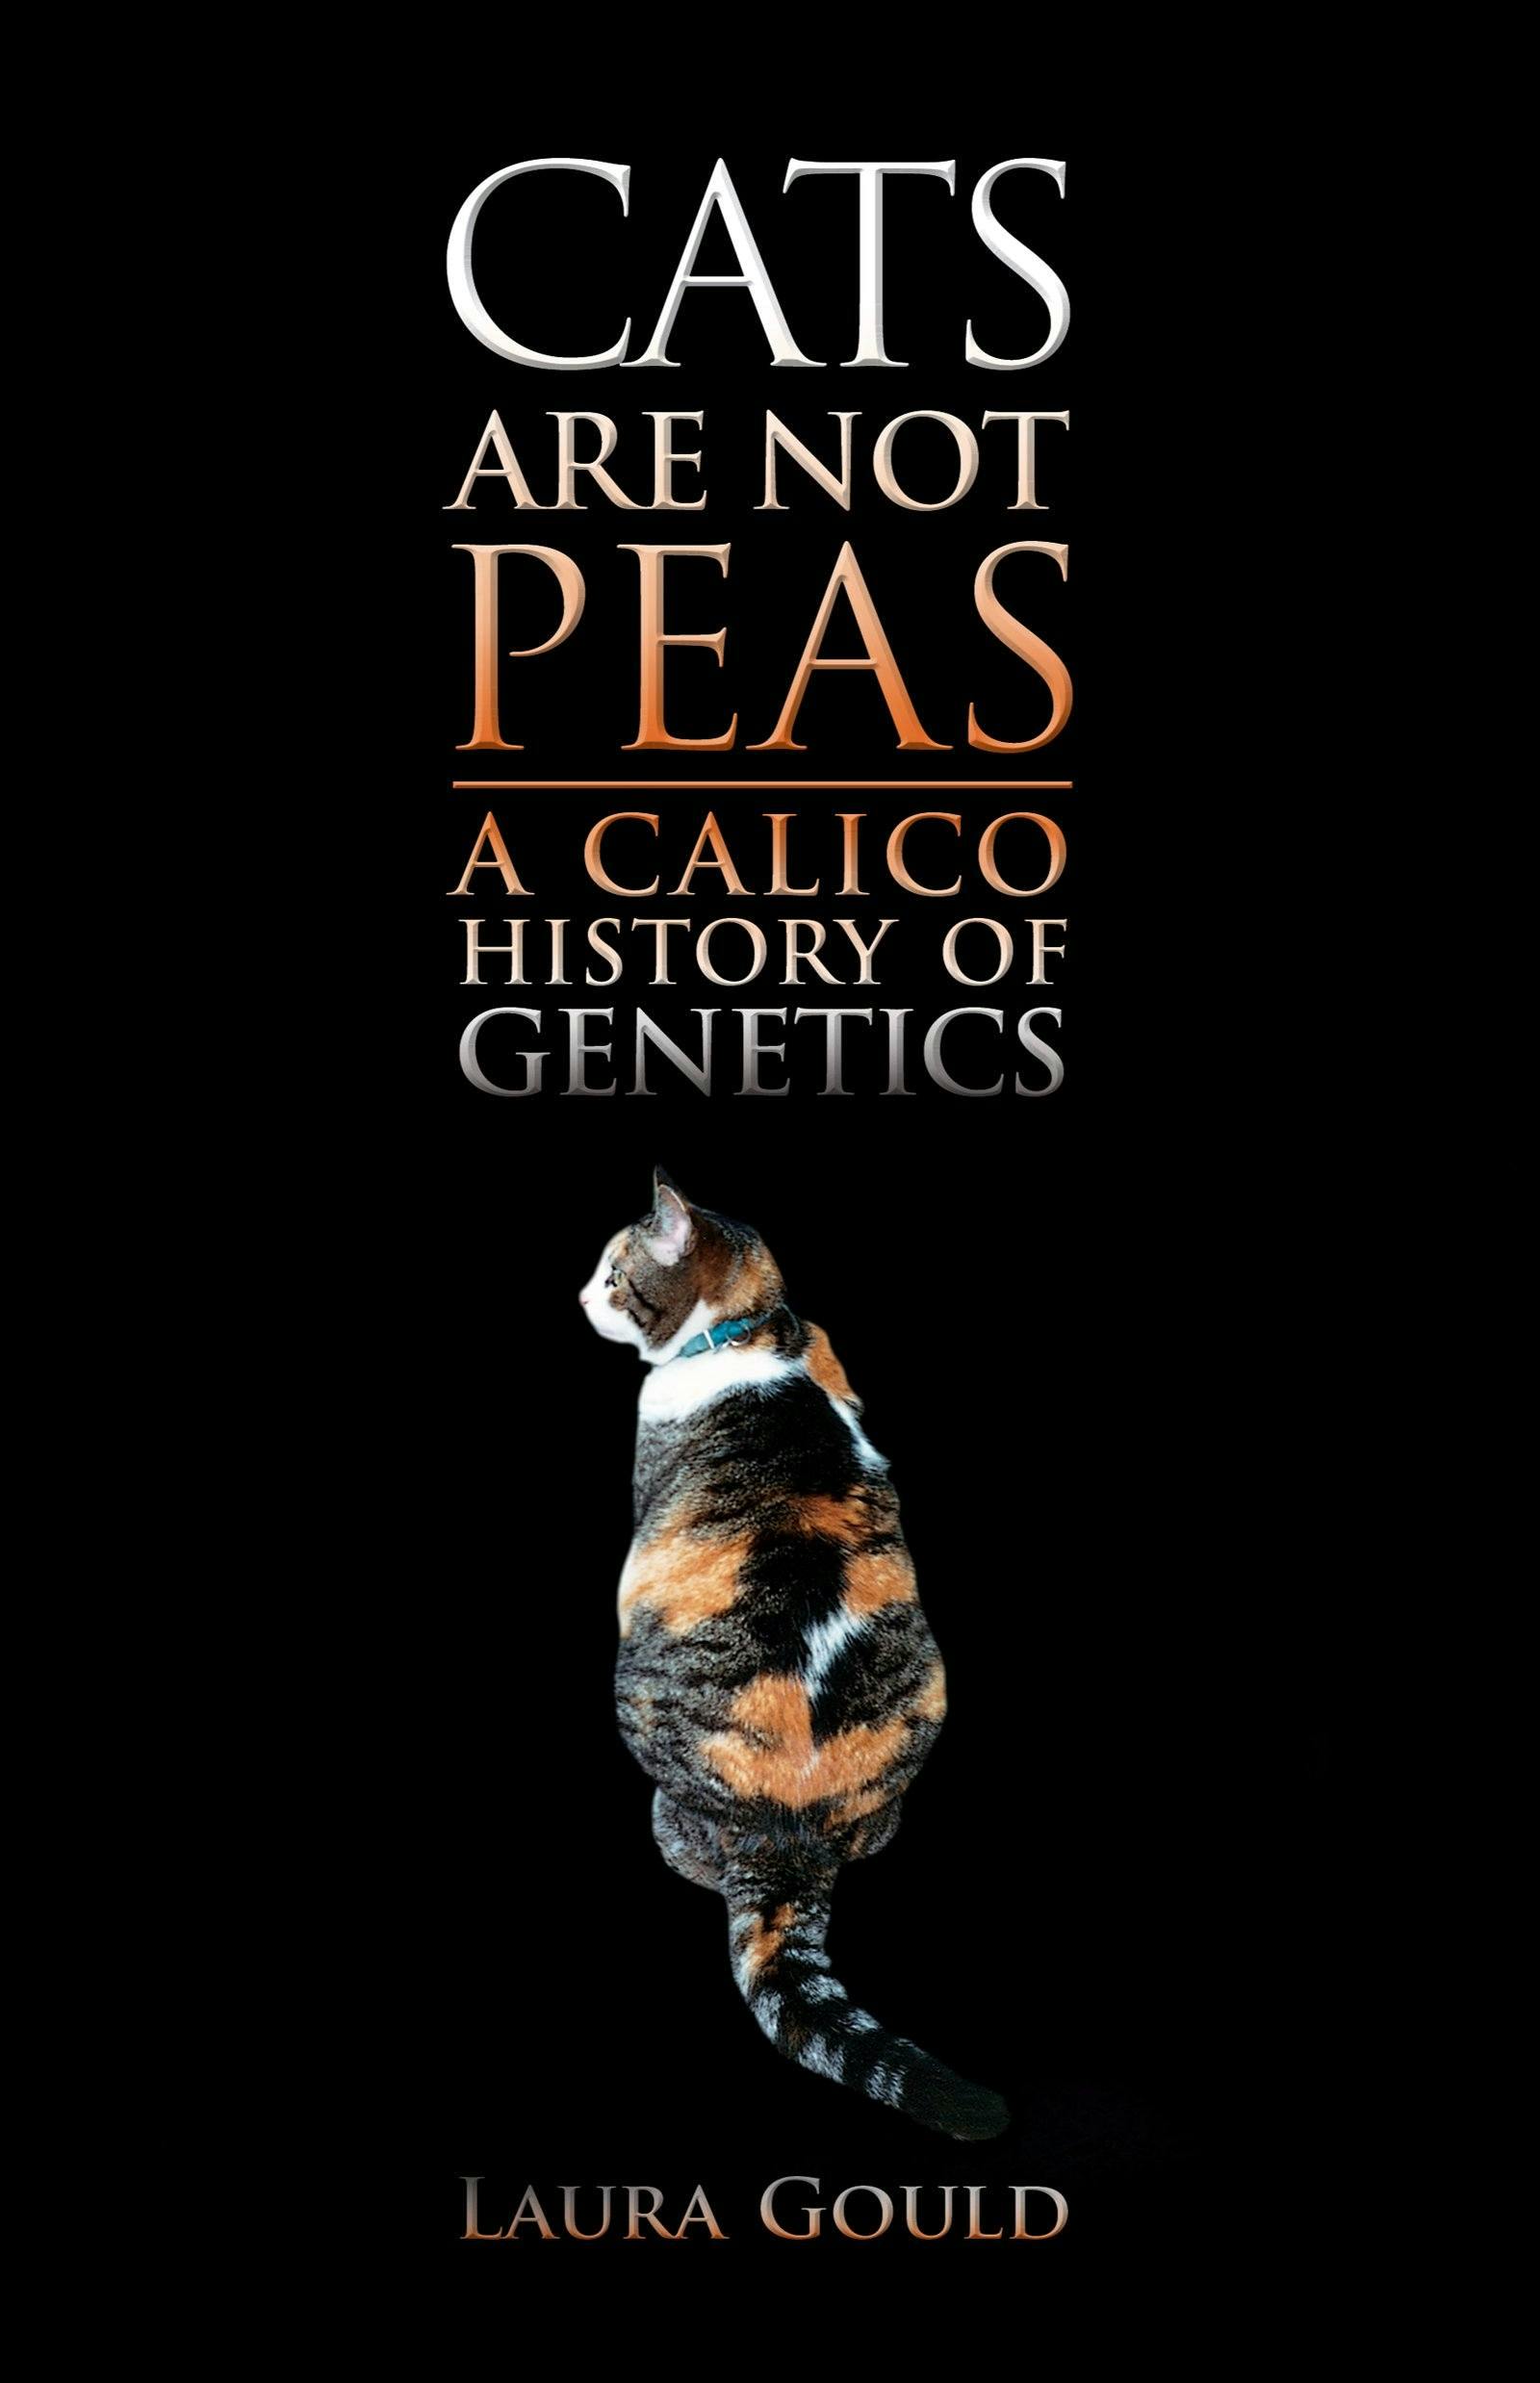 Bok om det genetiske grunnlaget for en calico katt av Laura Gould. 